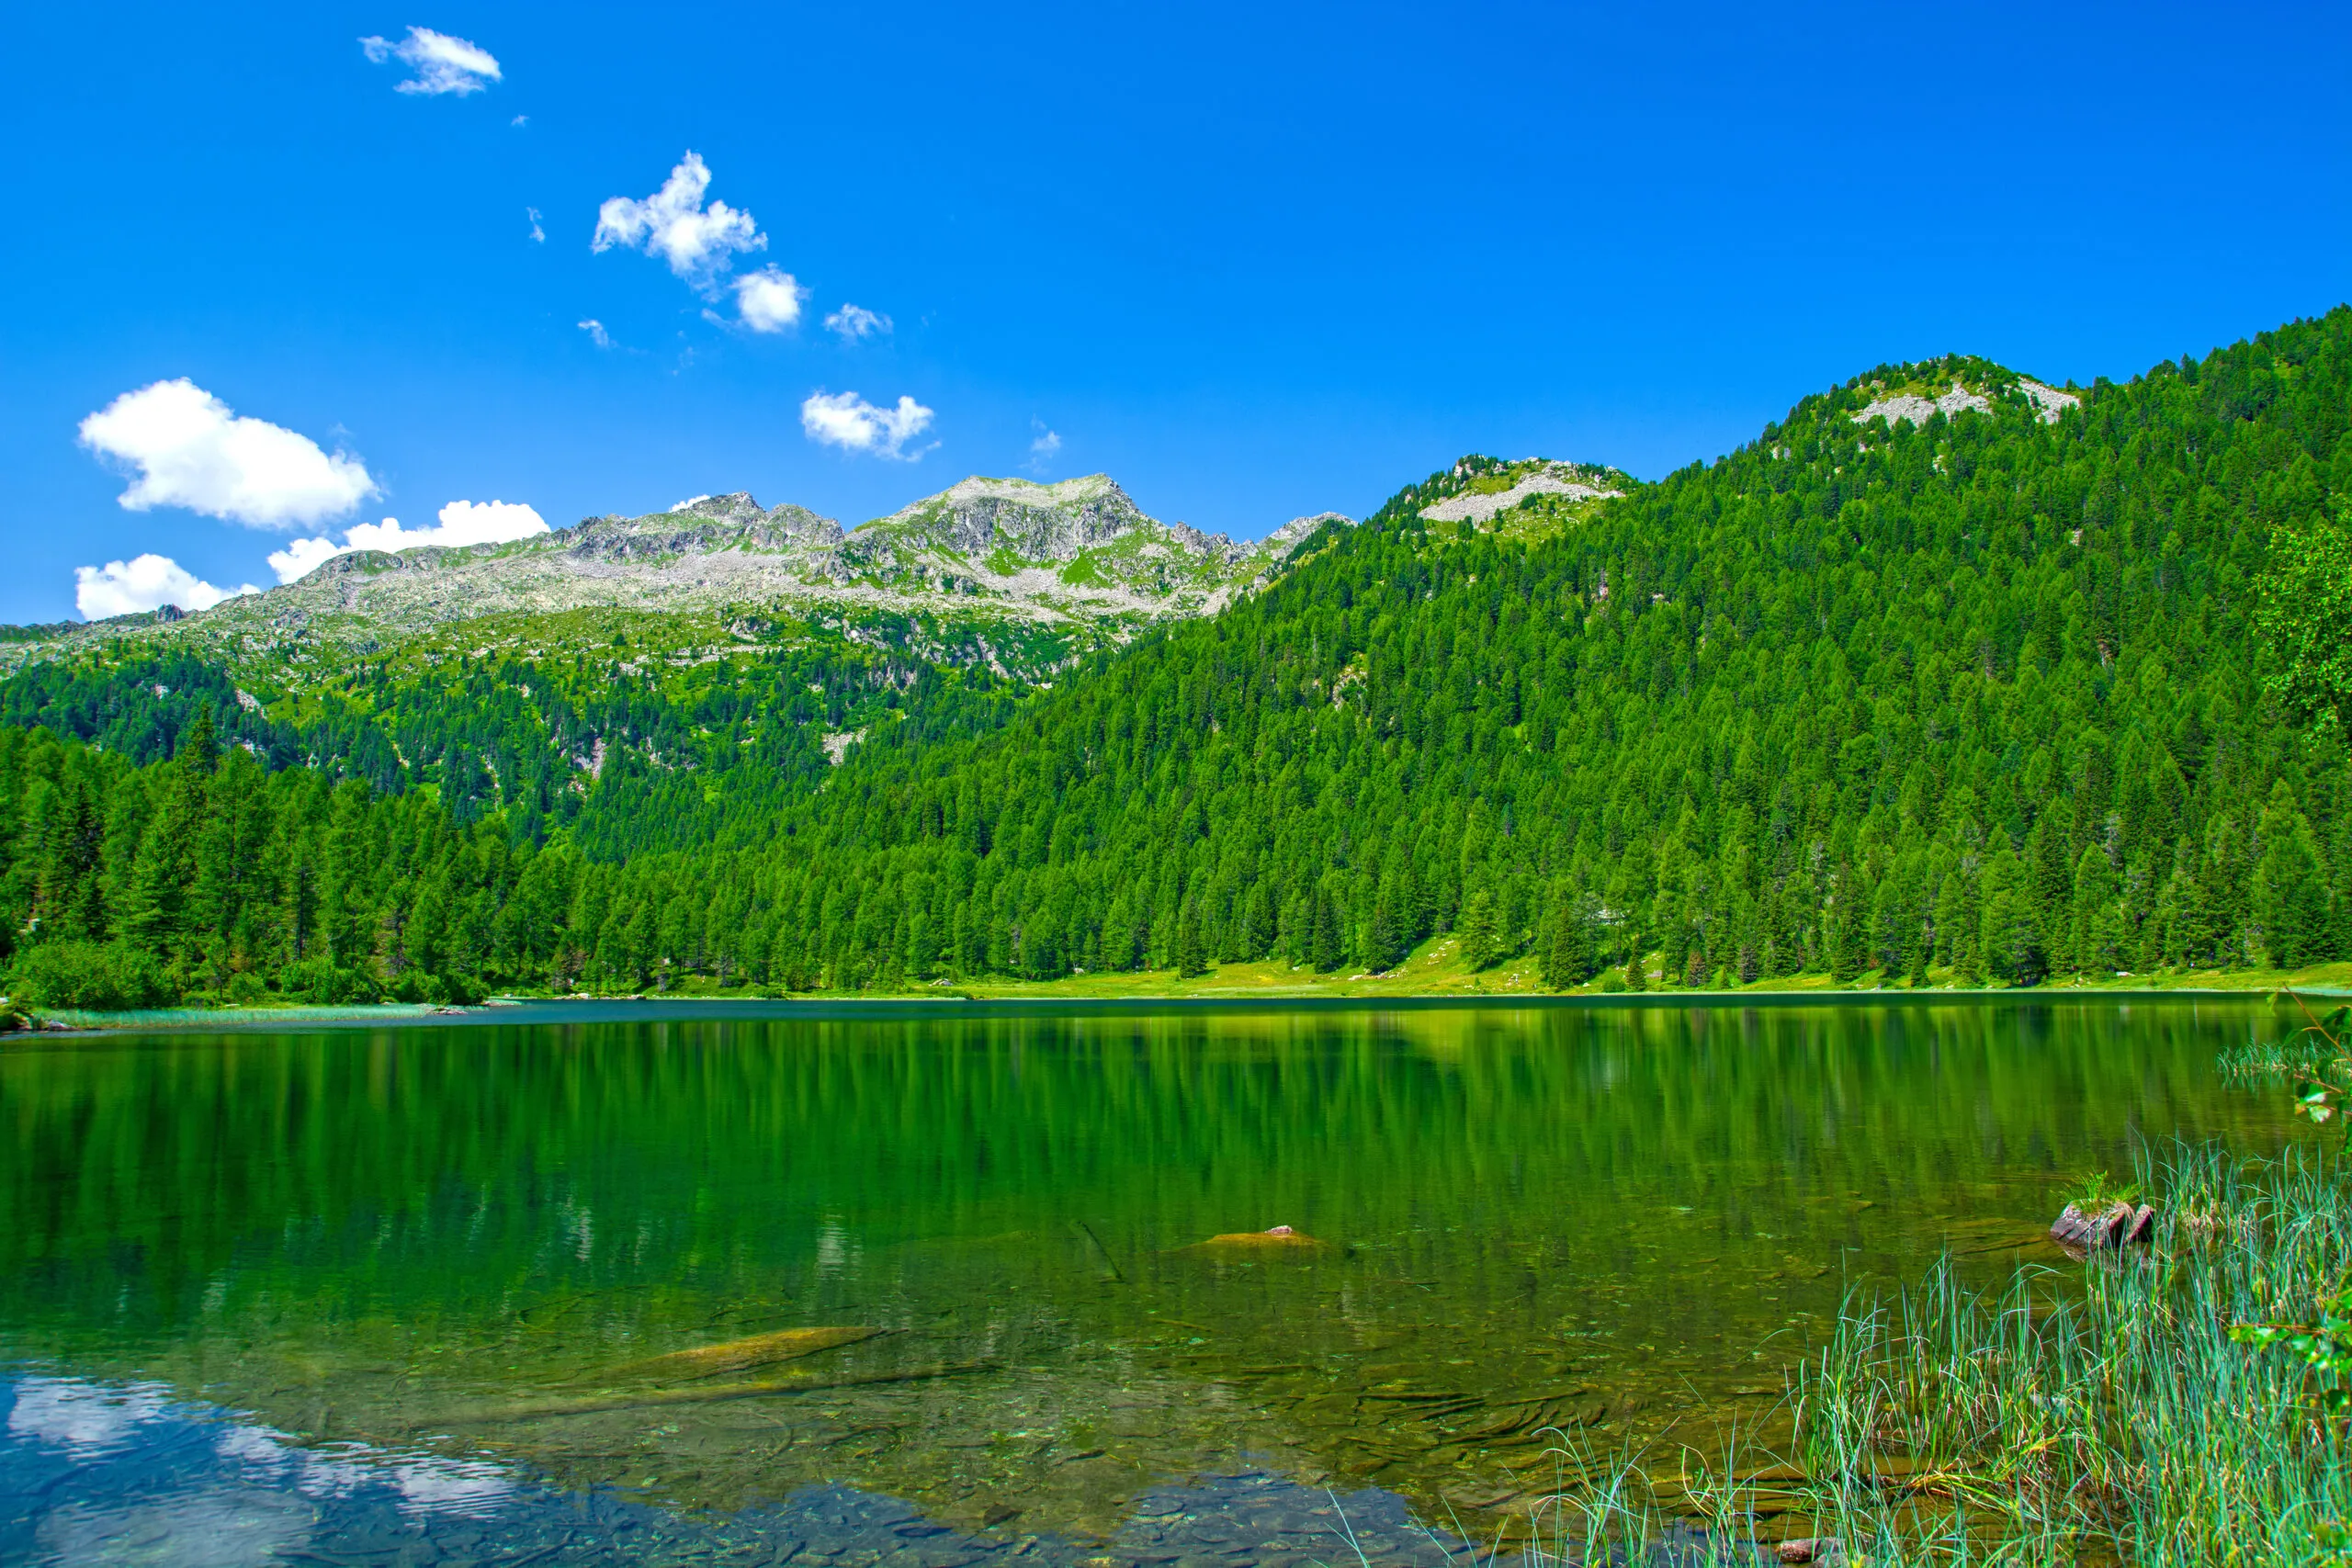 Malghette meer in de provincie Trentino, Italië